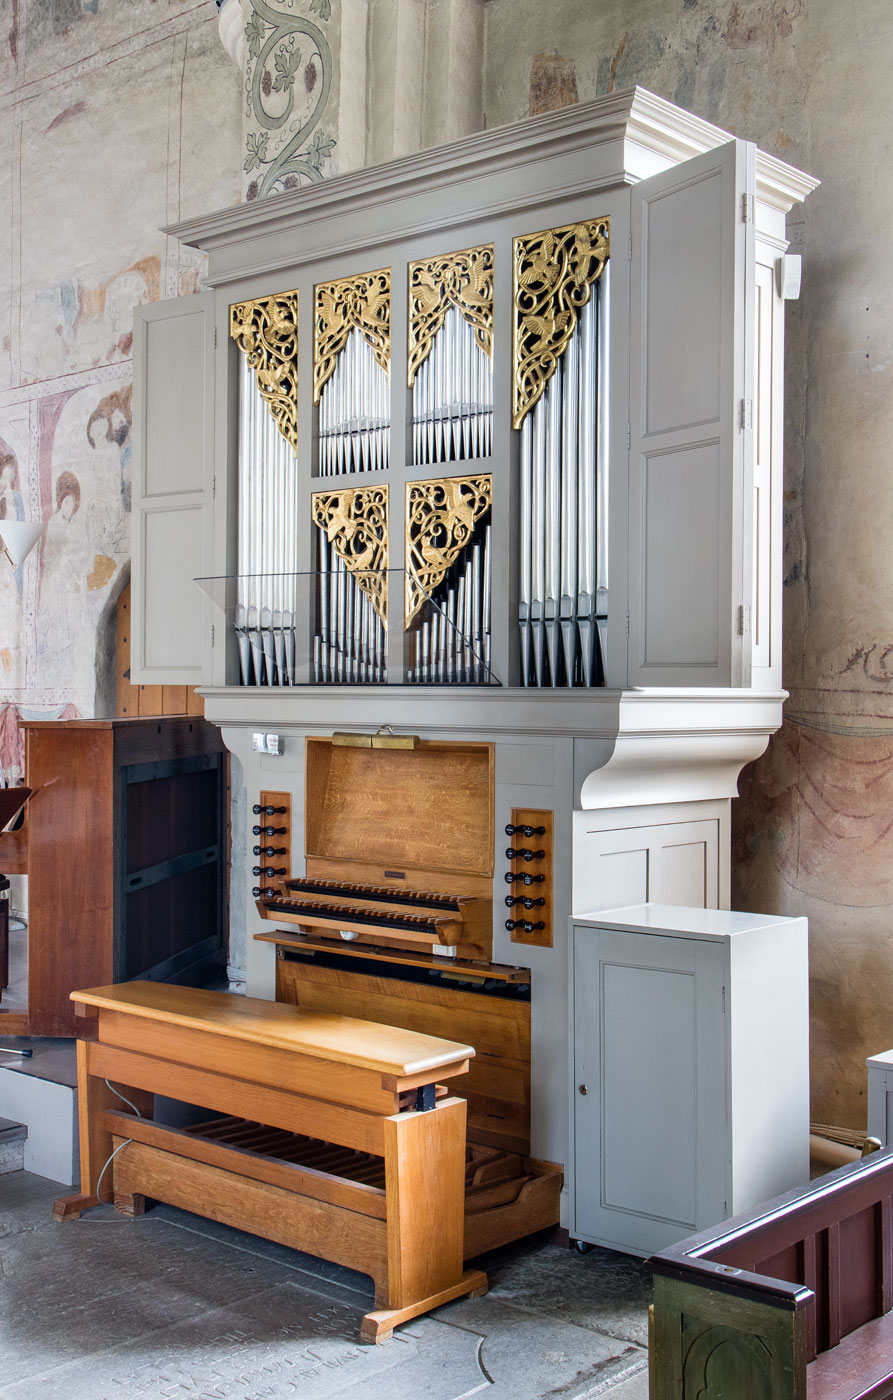 Orgel - Danmarks kyrka